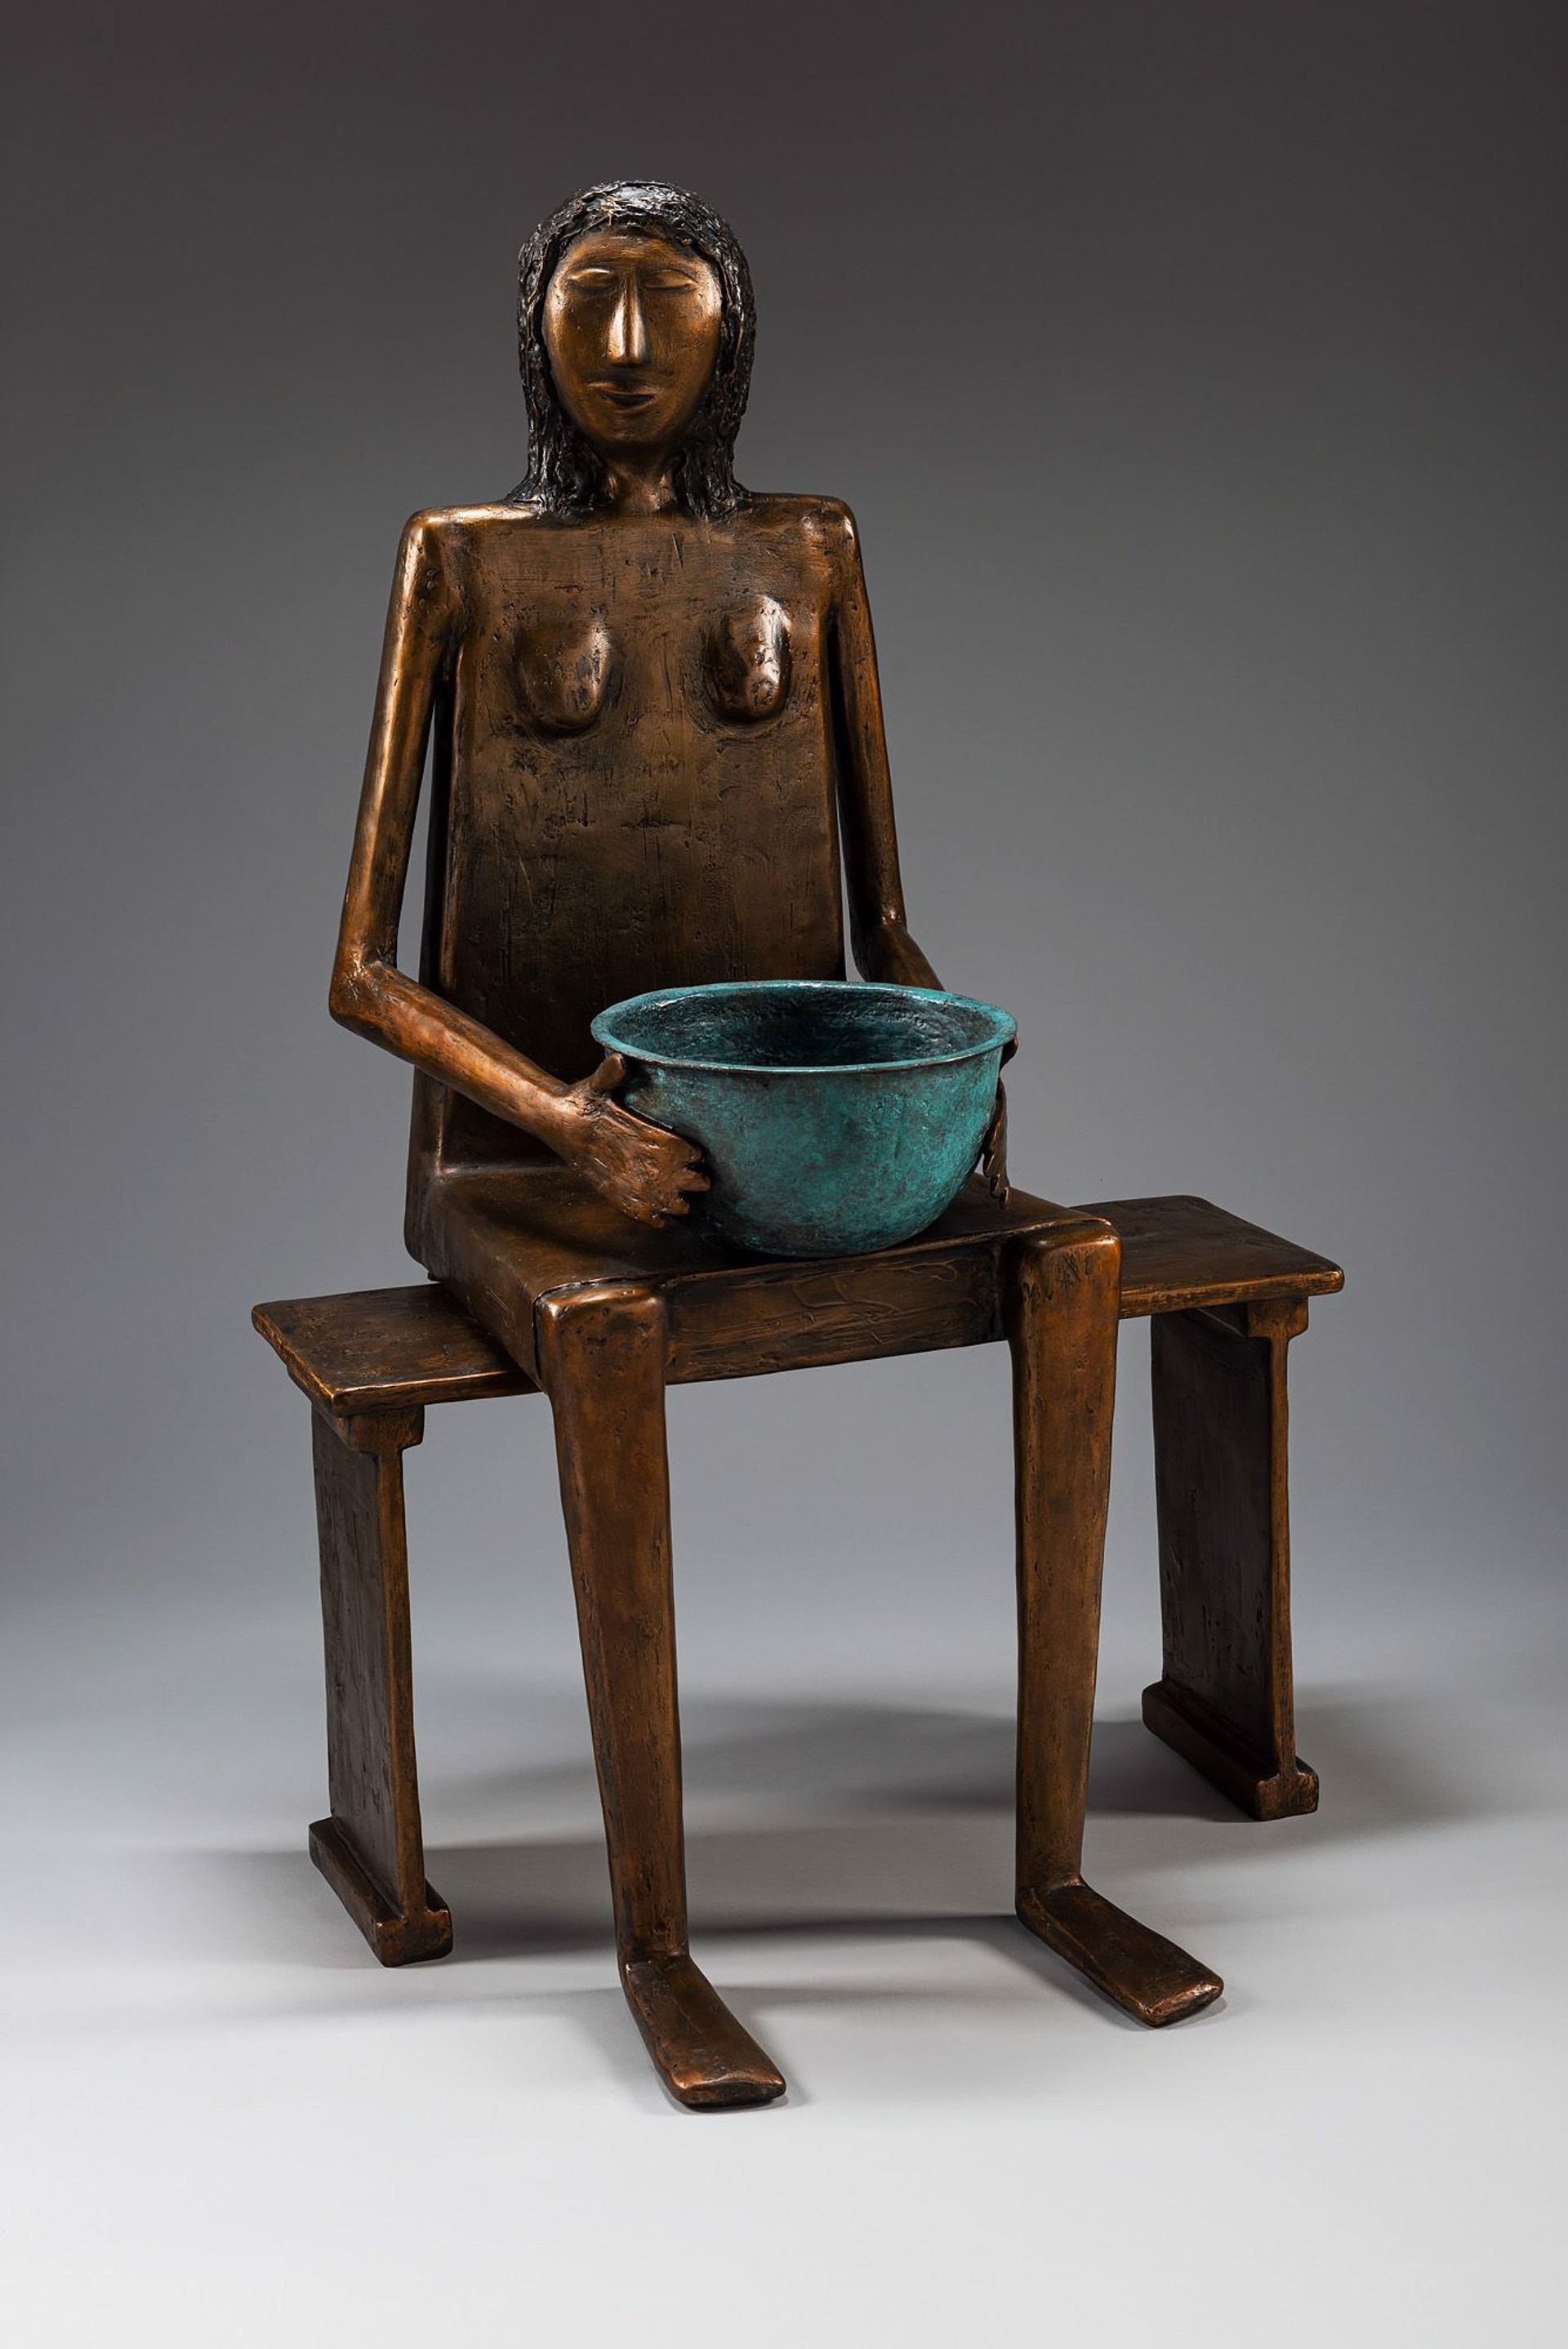 Woman With Blue Bowl by Allen Wynn